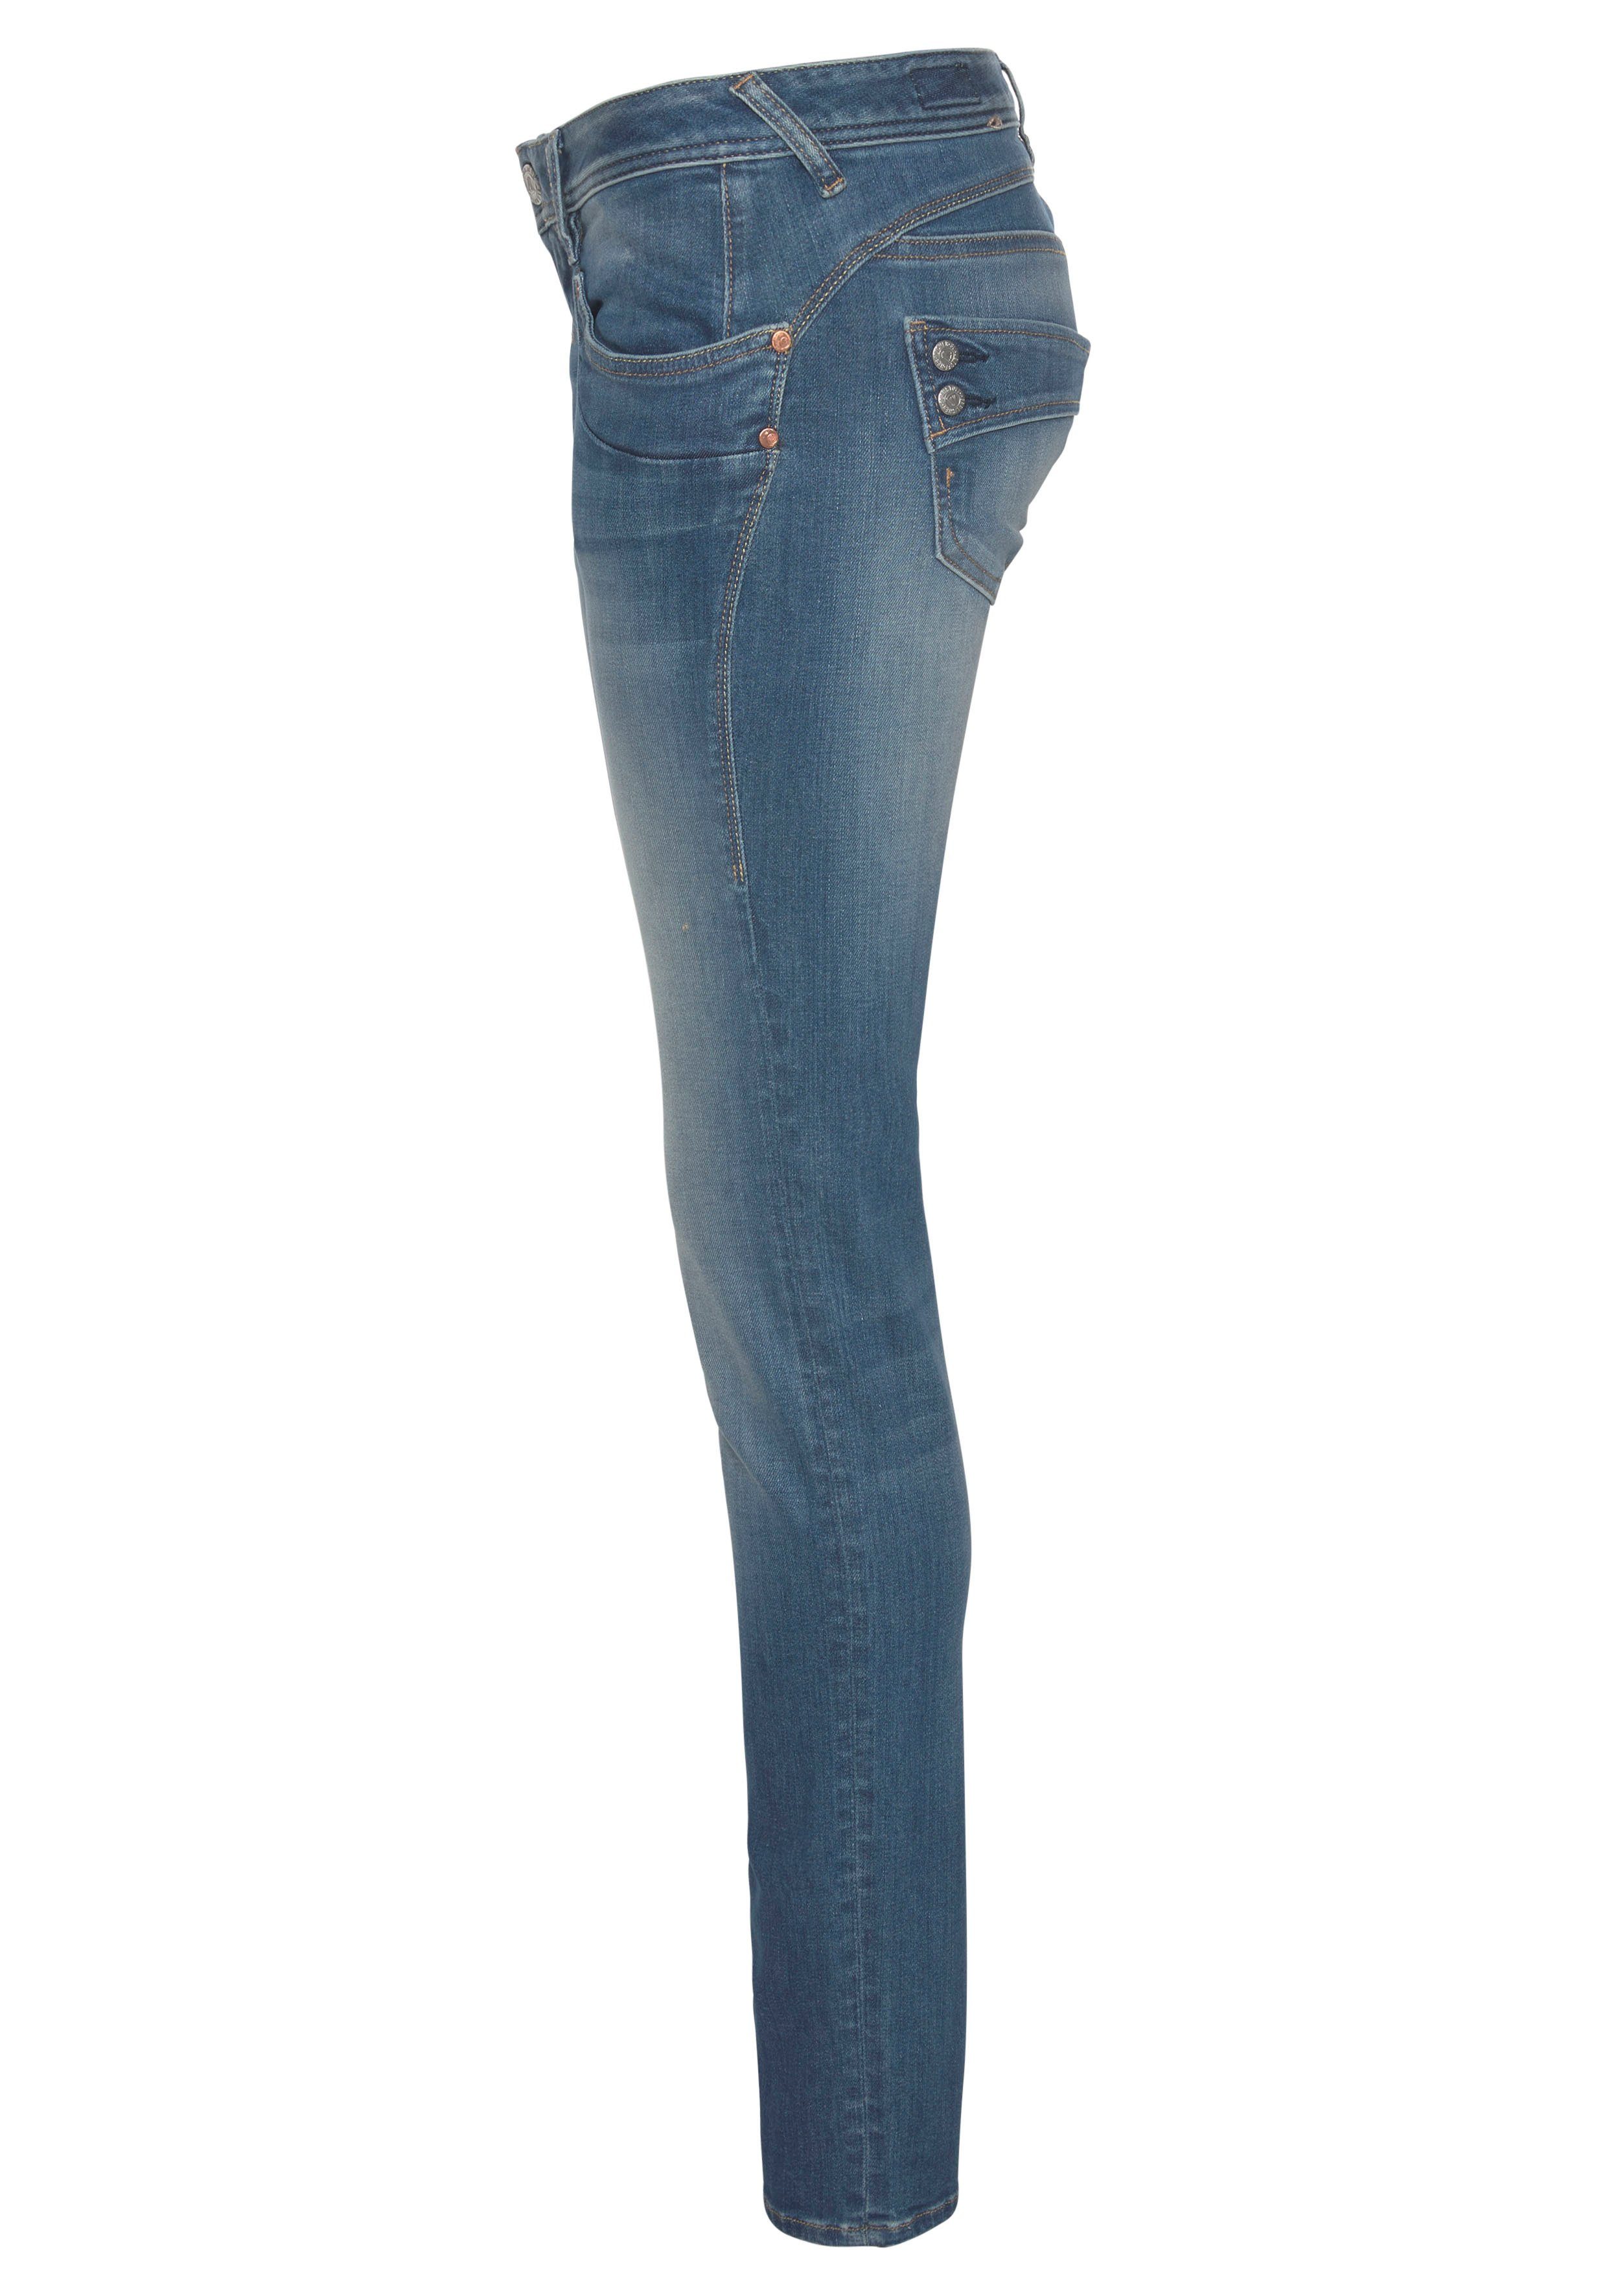 Herrlicher Slim-fit-Jeans dank Technology SLIM PIPER umweltfreundlich ORGANIC Kitotex